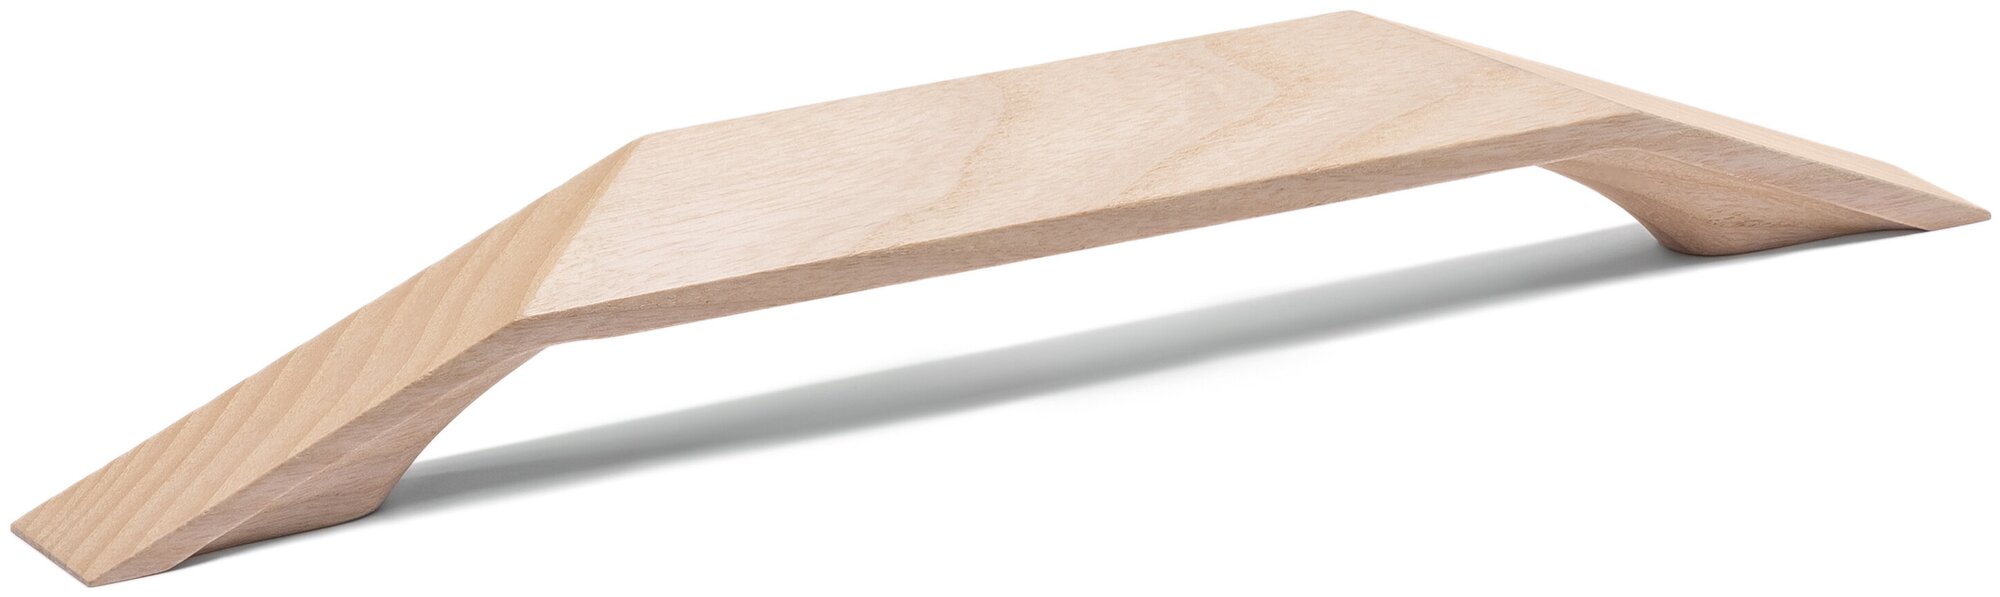 Ручка мебельная 192 мм, деревянная, белая, скоба, для кухни или кухонной мебели, шкафа, модель: "Skala 192" 1 шт.